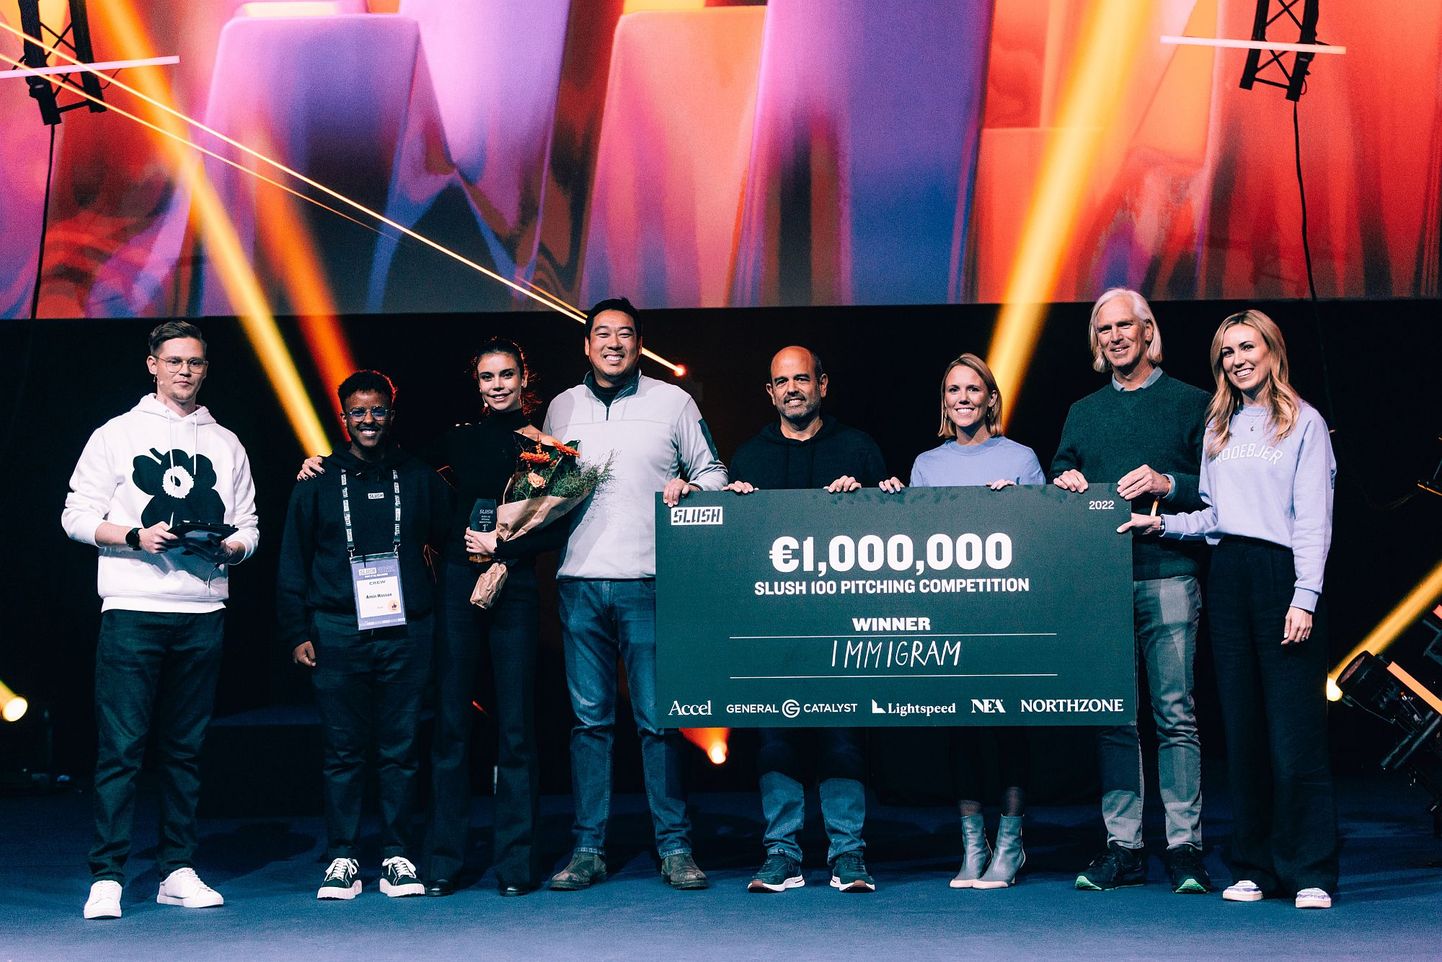 Maailma suurima idufirmade festivali Slush parima startupi tiitli koos miljoni euroga võitis vene päritolu Immigram. Sotsiaalmeedias tekitas see pahameeletormi.